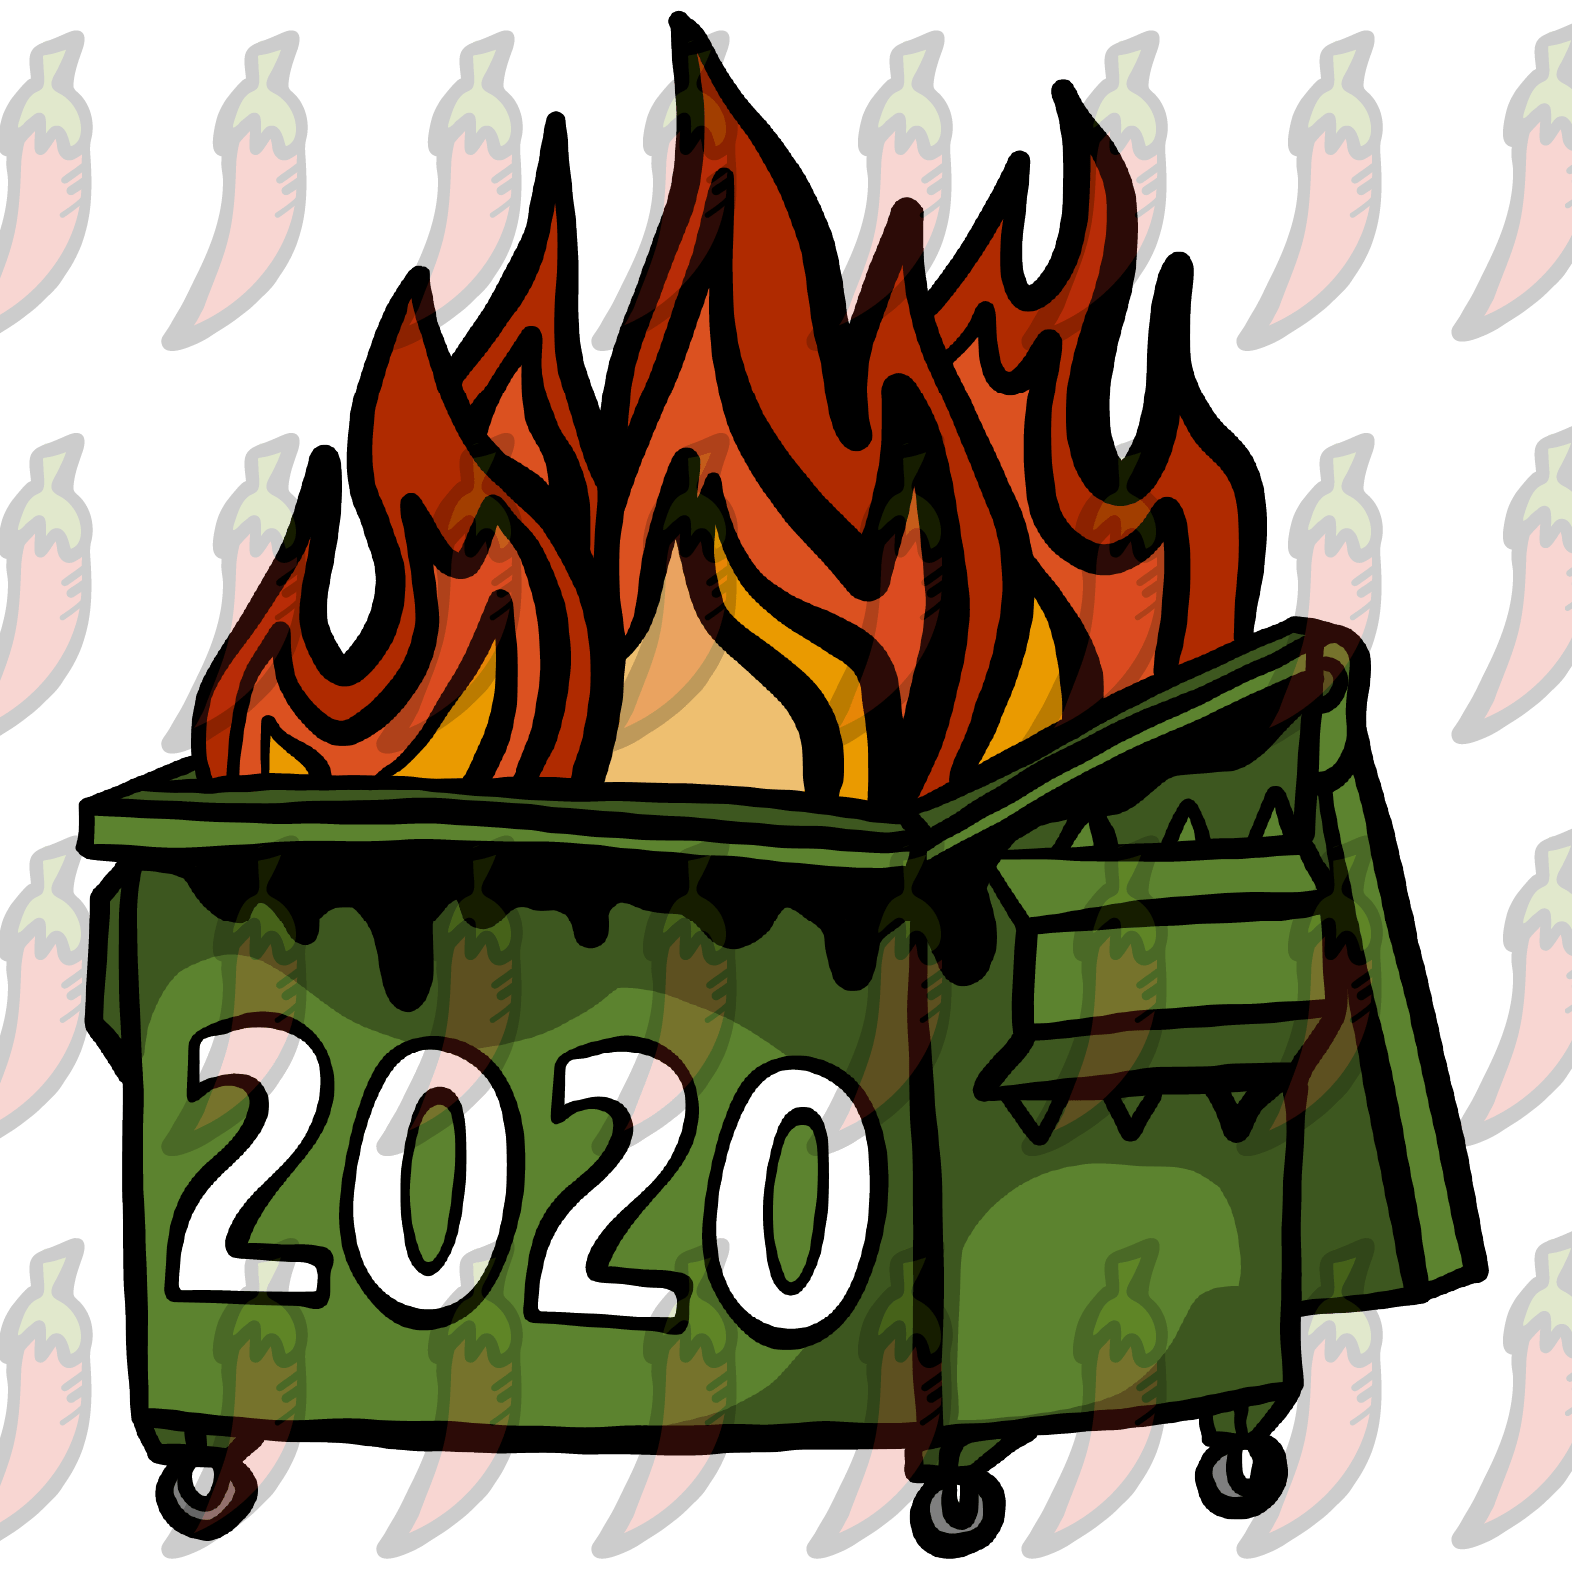 2020 Dumpster Fire 🗑️ - Tank